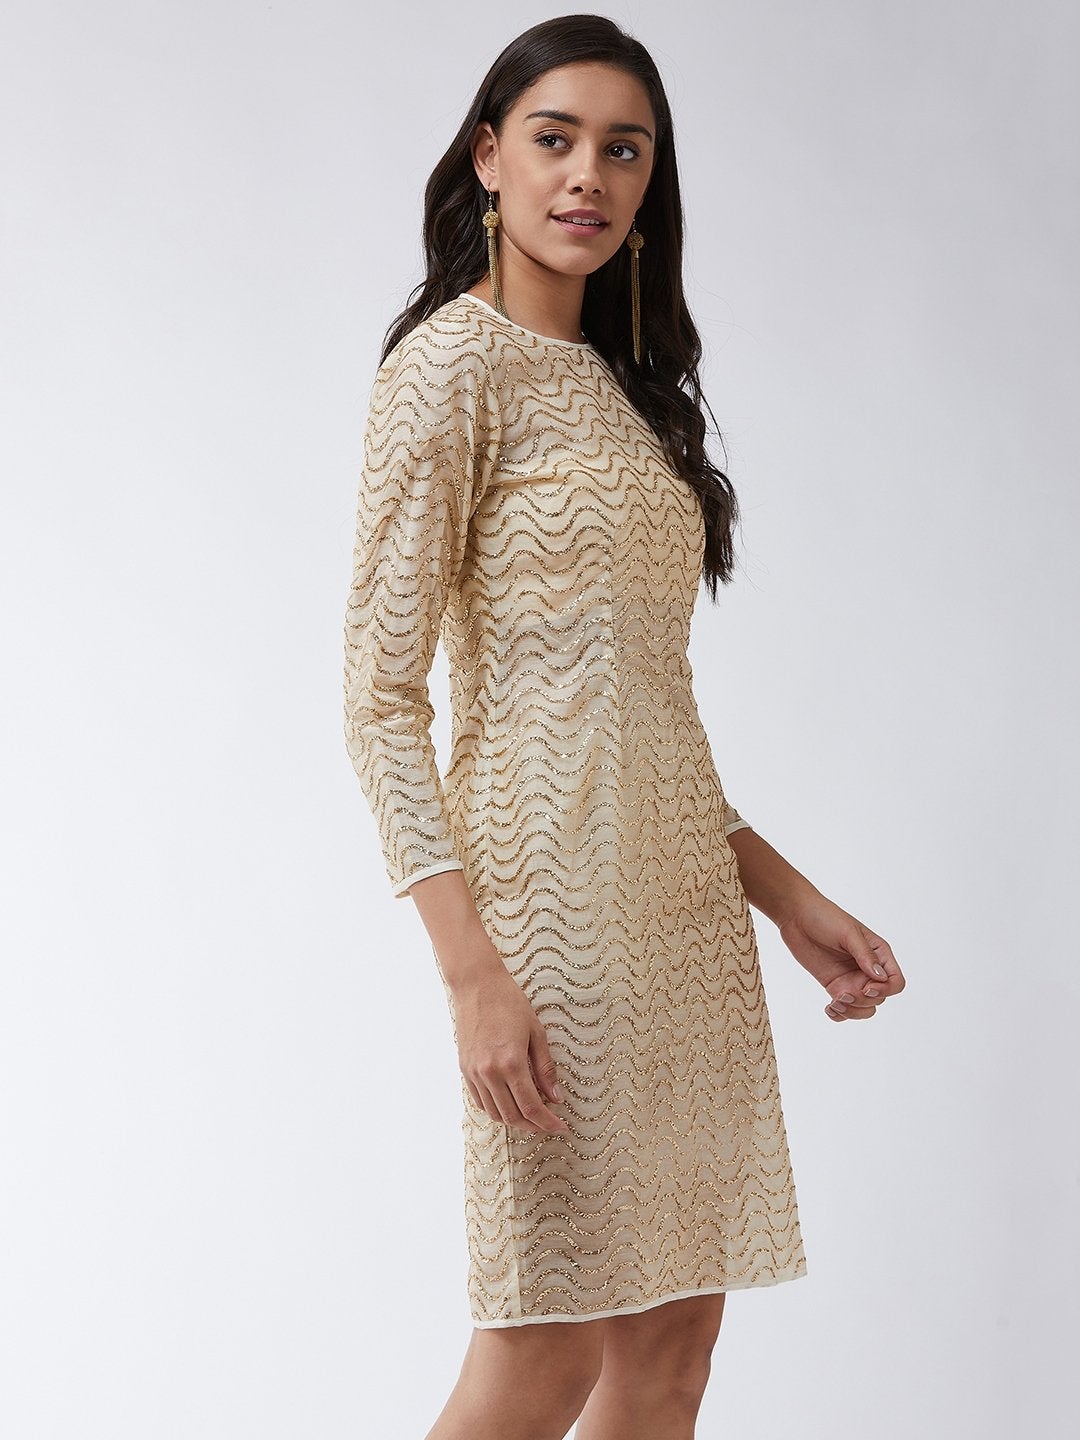 Women's Fitted Golden Shimmer Dress - Pannkh